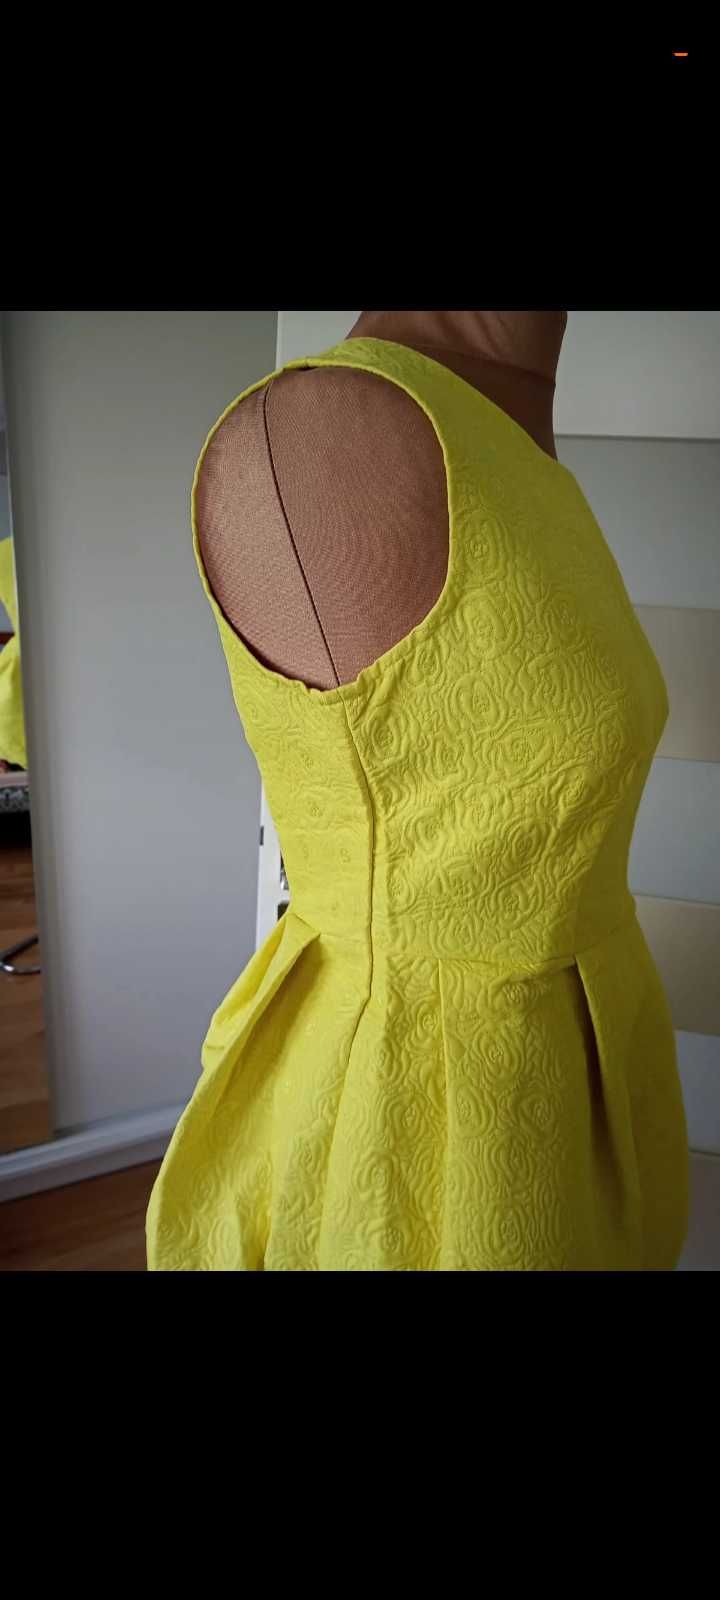 Sukienka seledynowa żółta bez rękawów.